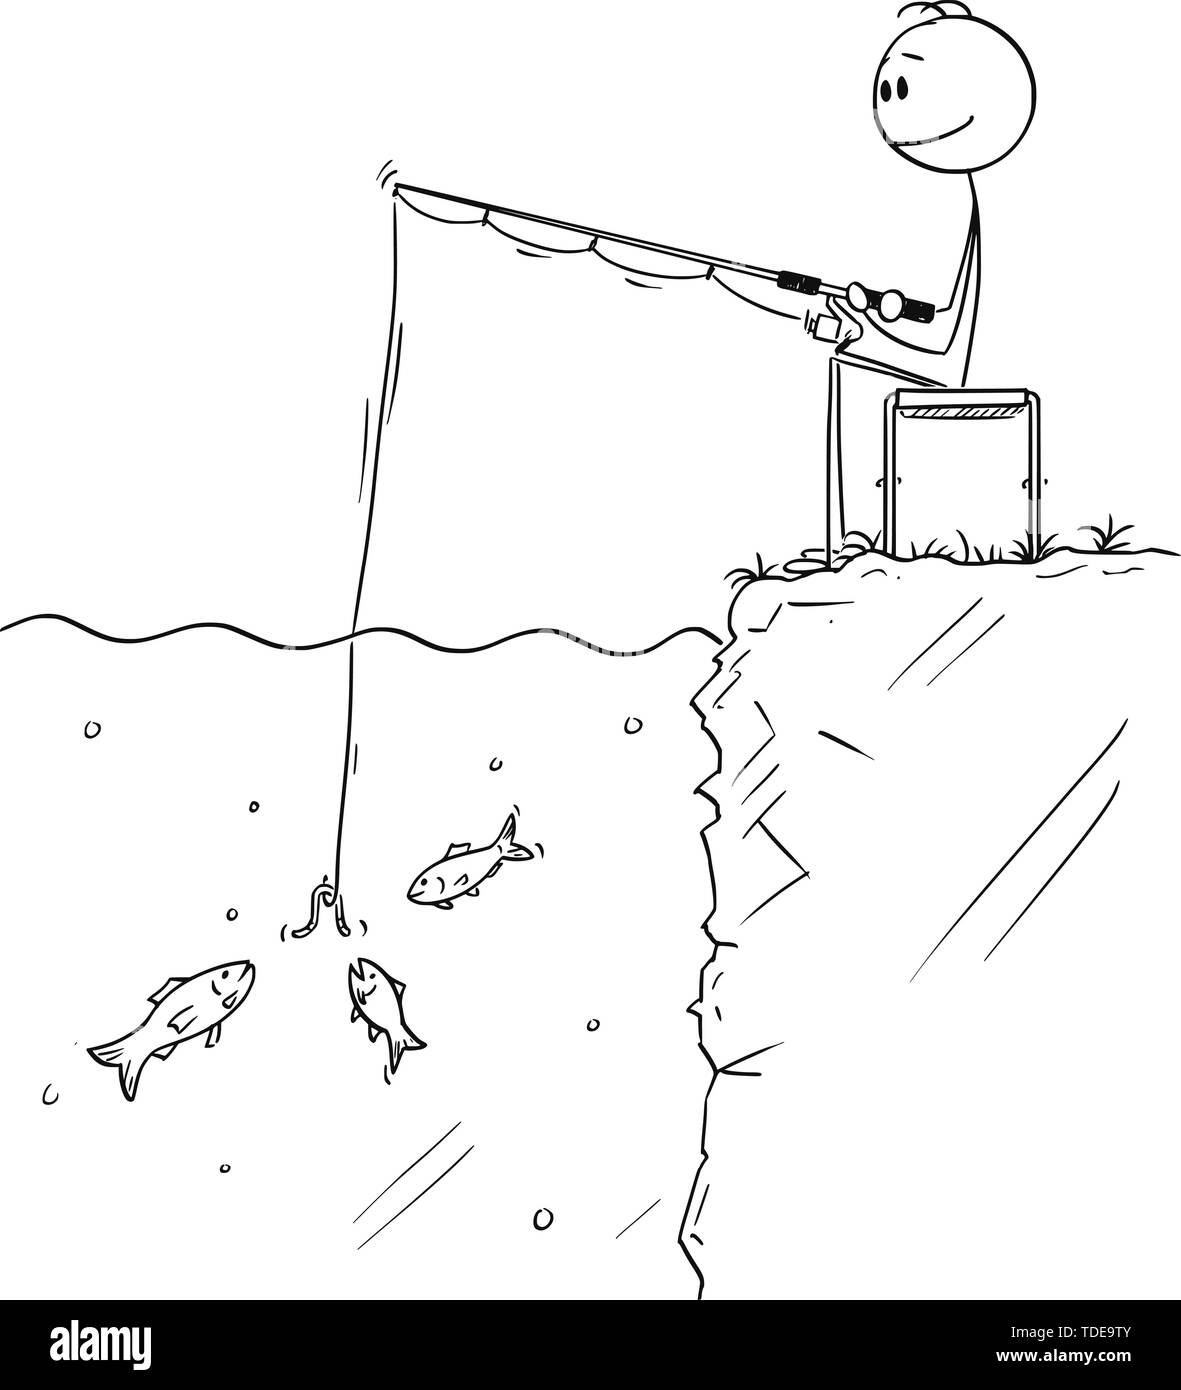 Vector cartoon stick figure dessin illustration conceptuelle de l'homme assis calmement près de l'eau et la pêche à la ligne ou de la pêche, tandis que plusieurs poissons est à la recherche à l'appât. Illustration de Vecteur